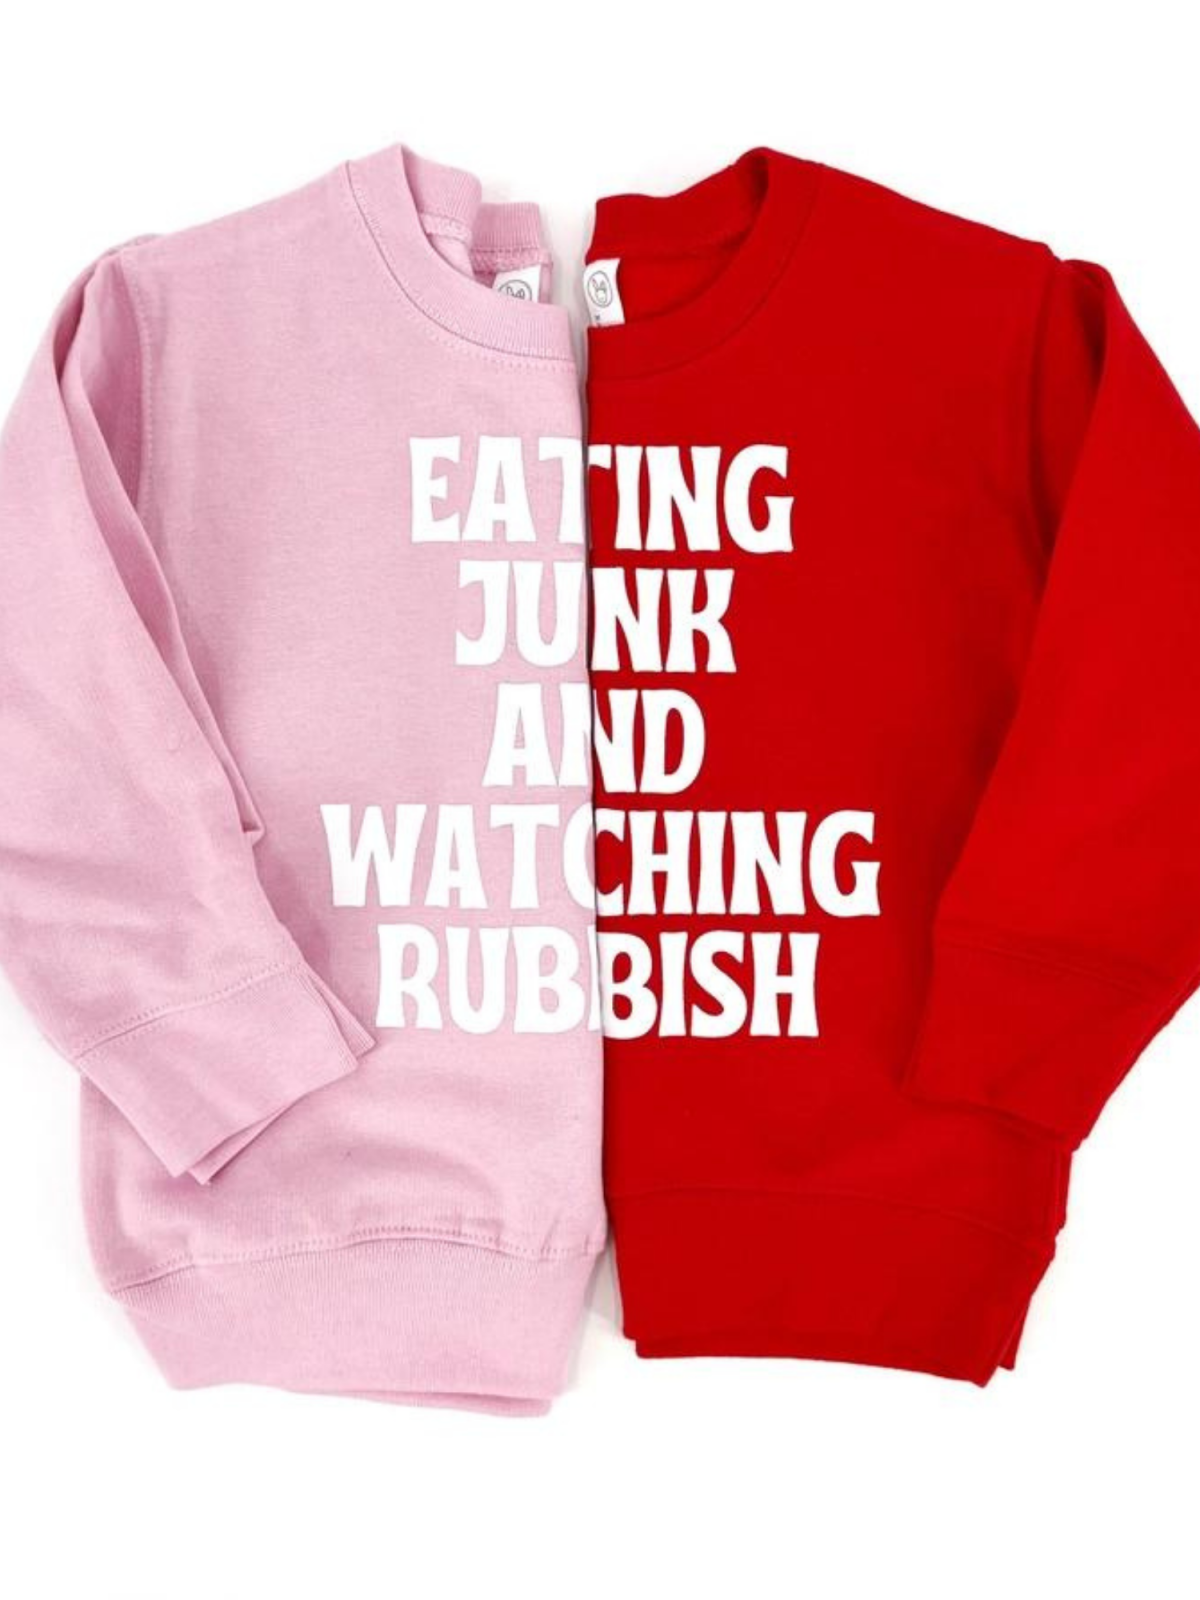 Eating Junk & Watching Rubbish Kids Sweatshirt, Red